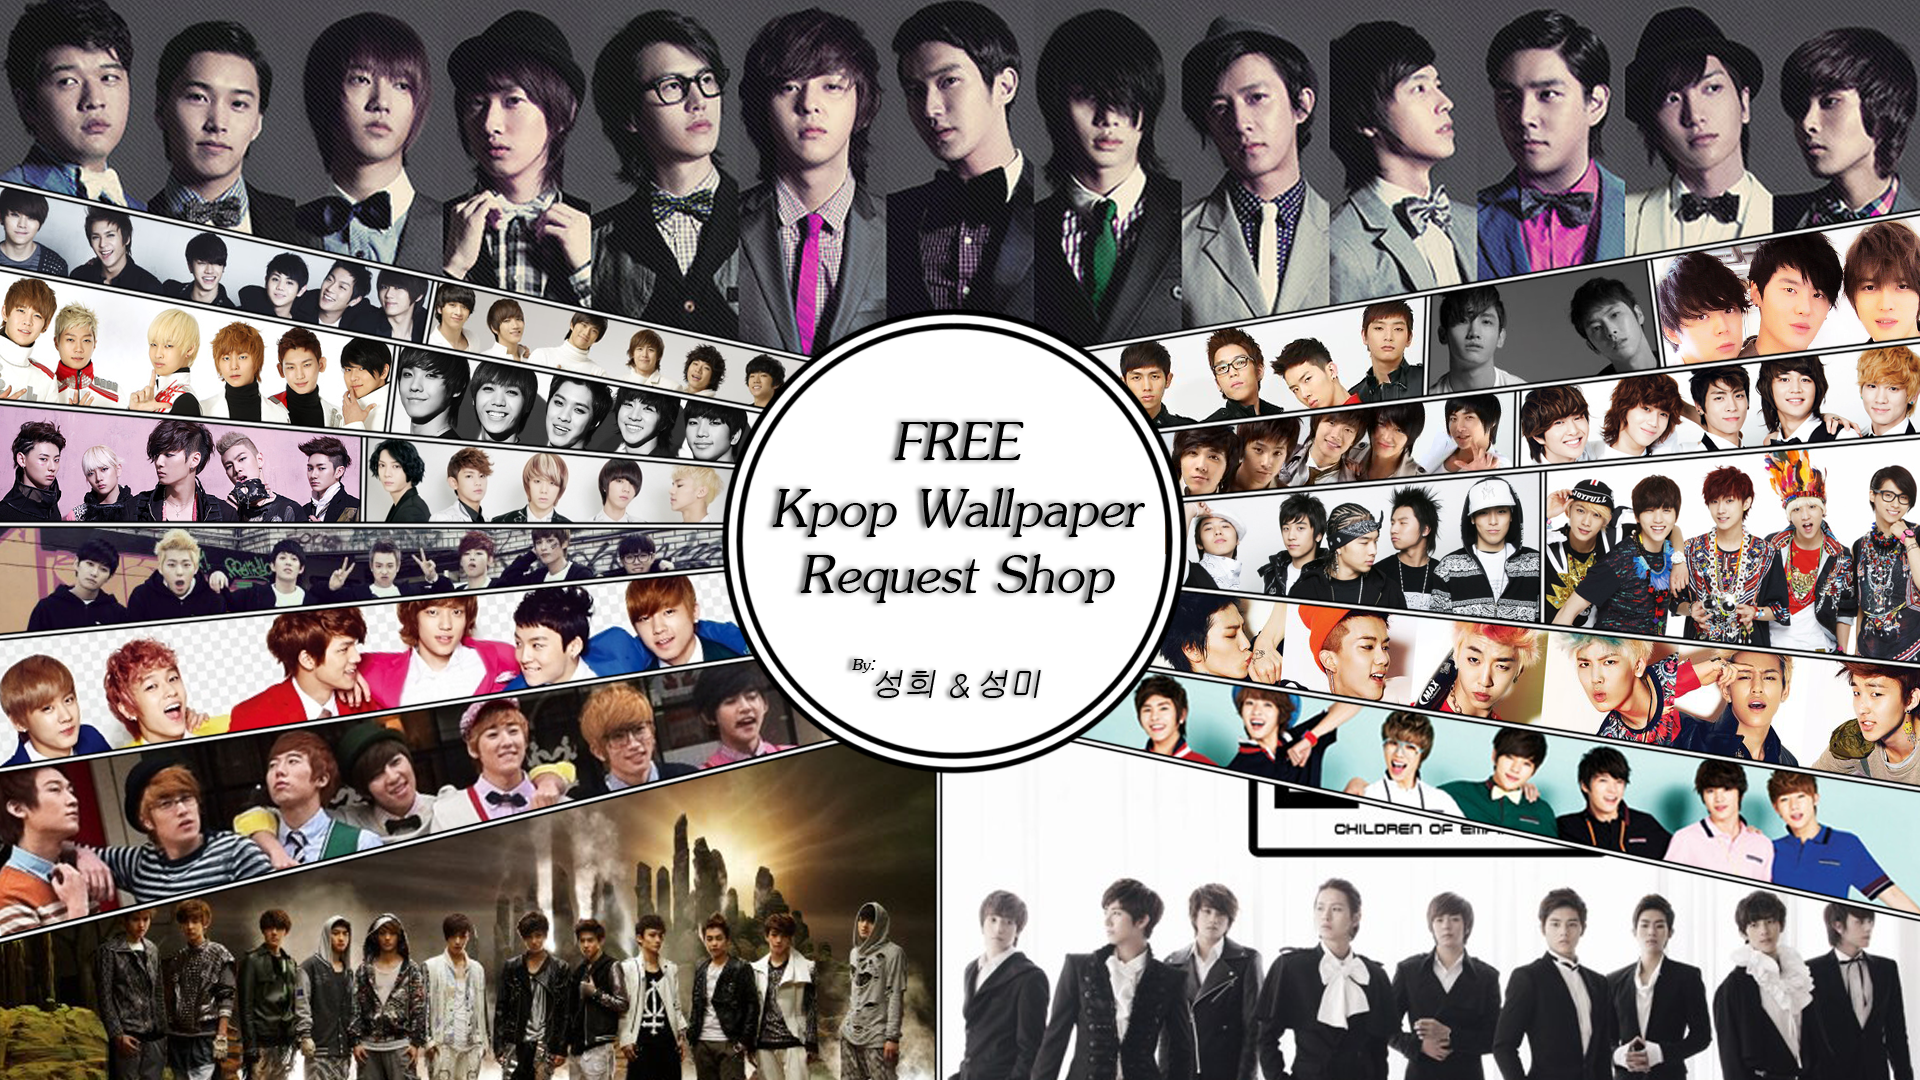 ... SHINeeSJGirlz139 FREE~ Kpop Wallpaper Request Shop! by SHINeeSJGirlz139